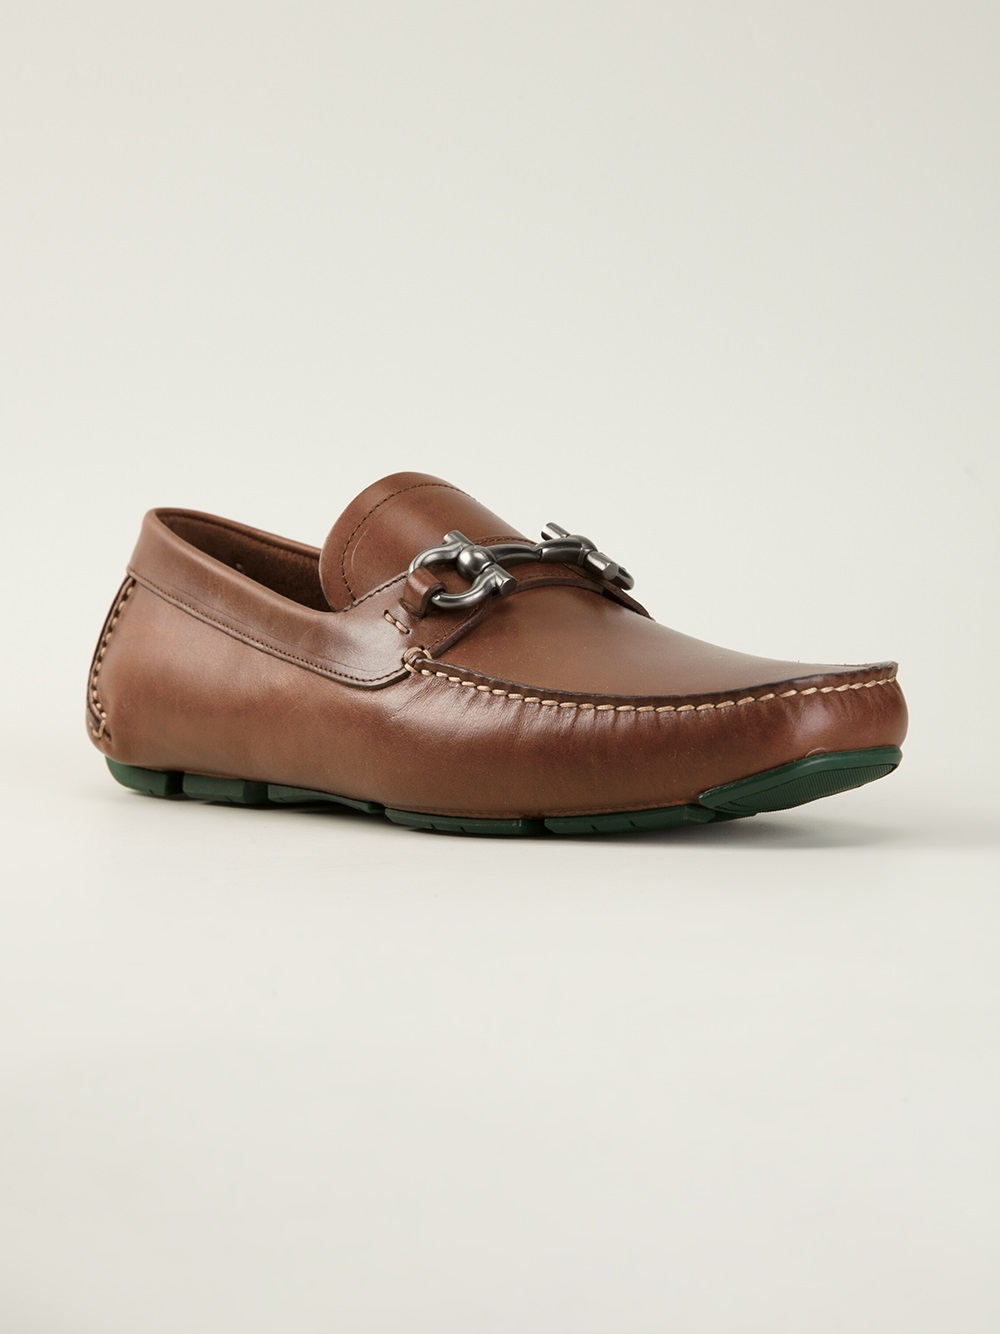 Lyst - Ferragamo Loafers in Brown for Men